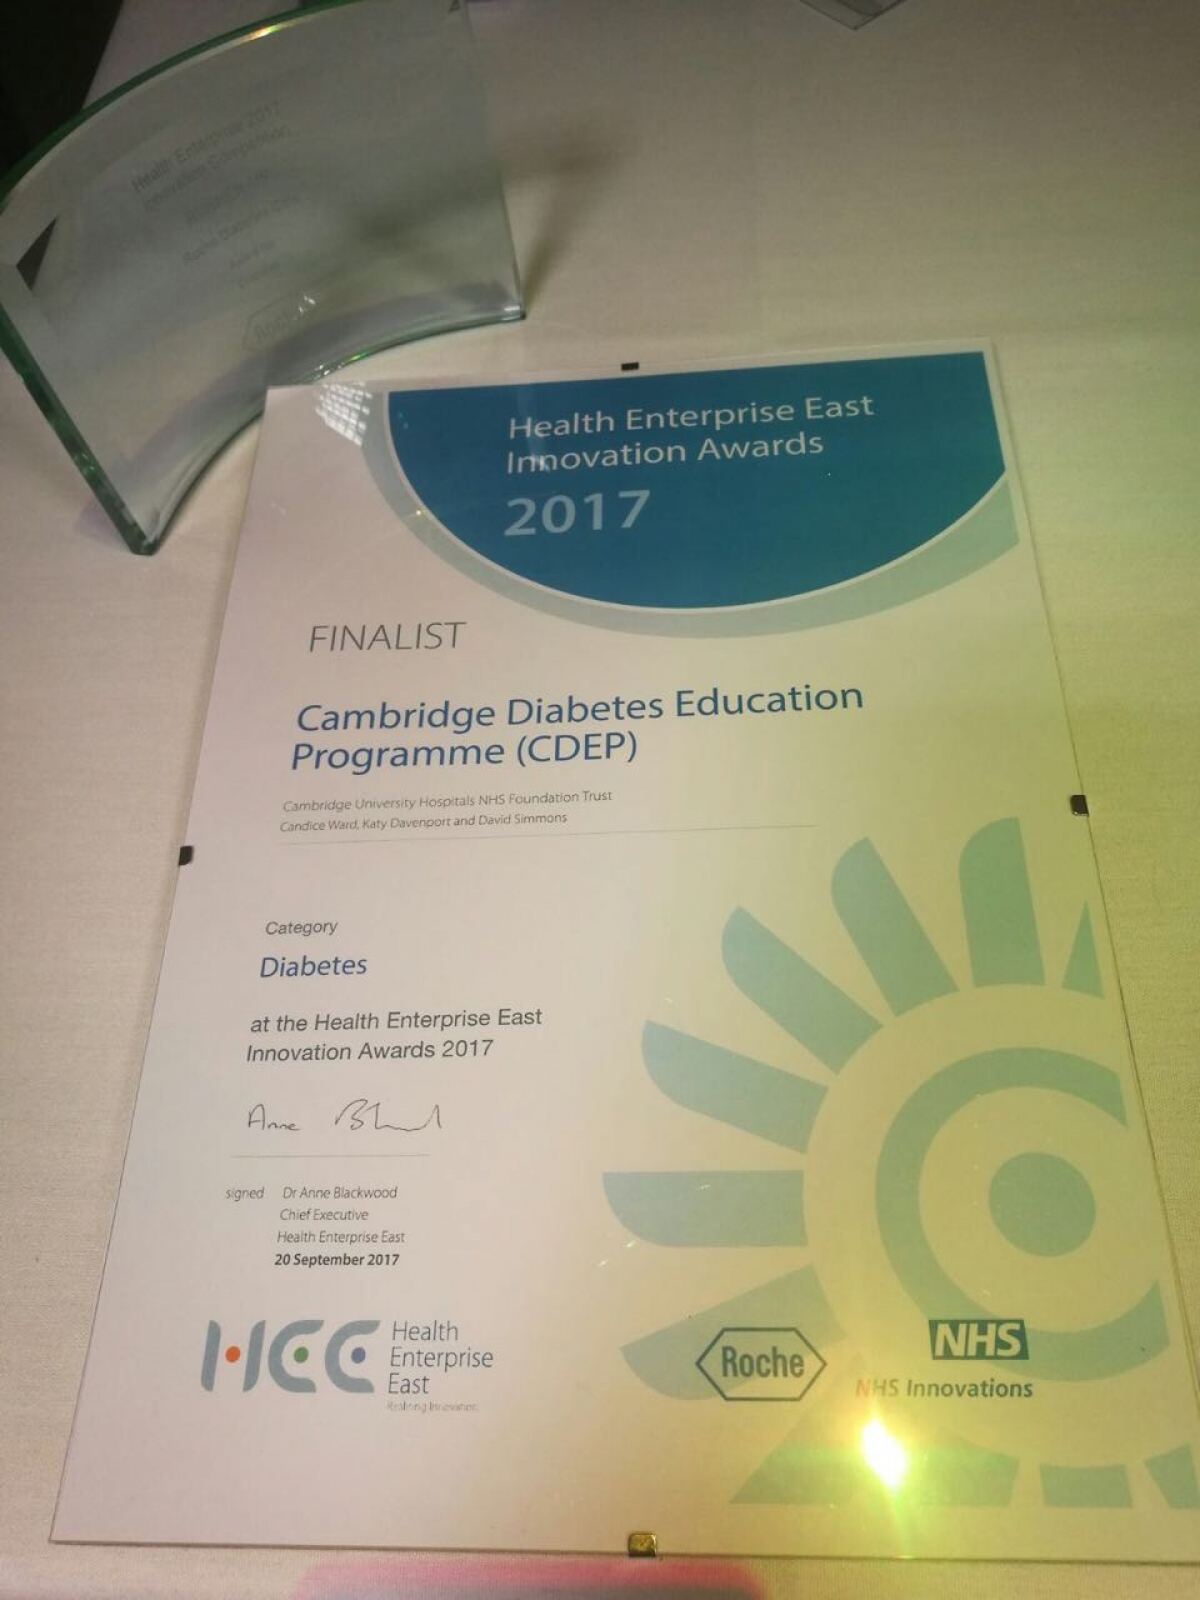 CDEP 1st Runner Up In The 2017 HEE Innovation Awards